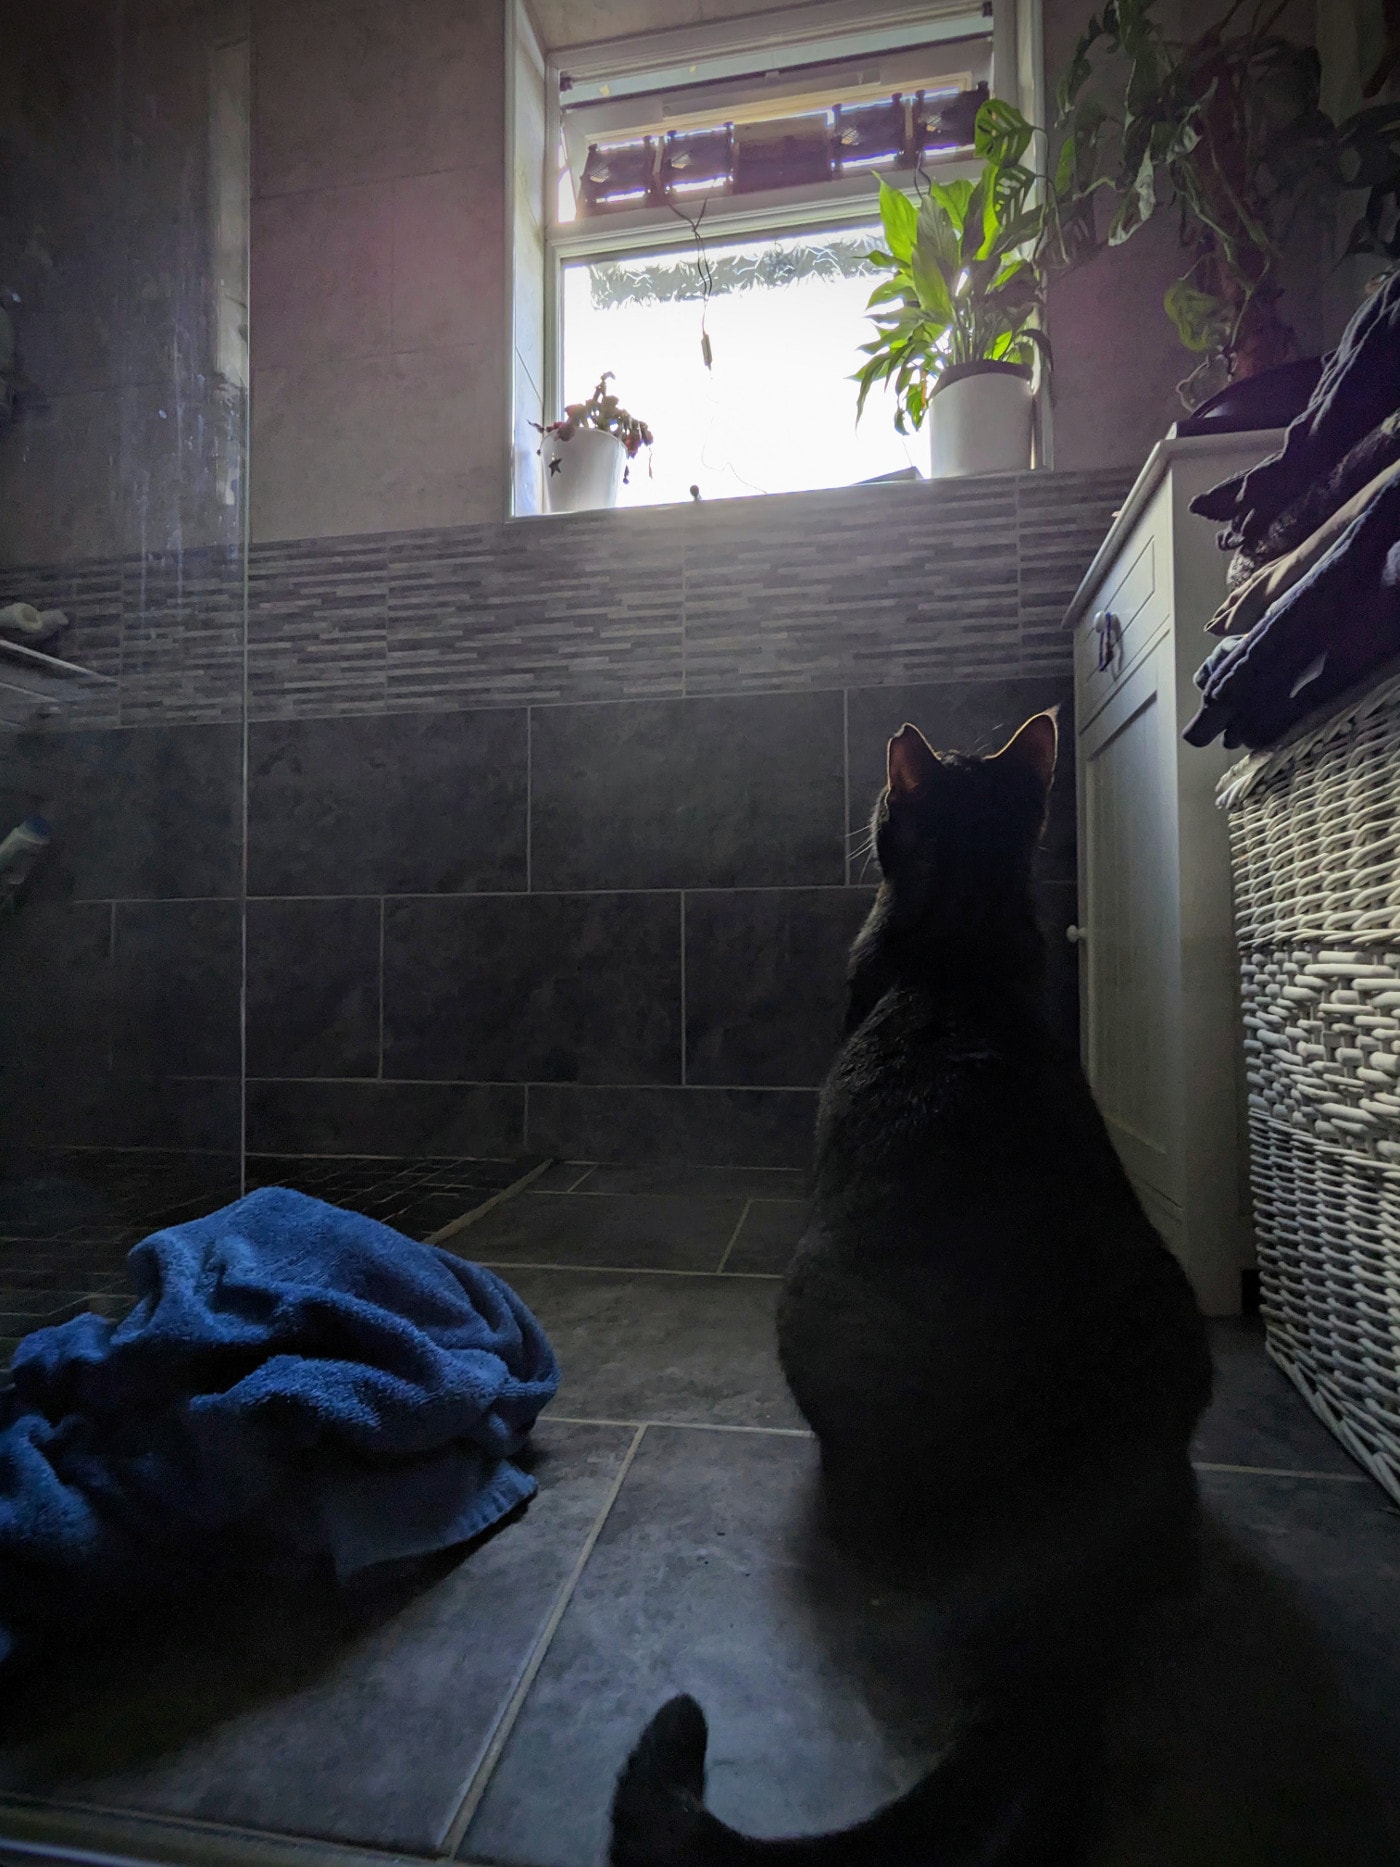 Dexter looking at the window fan